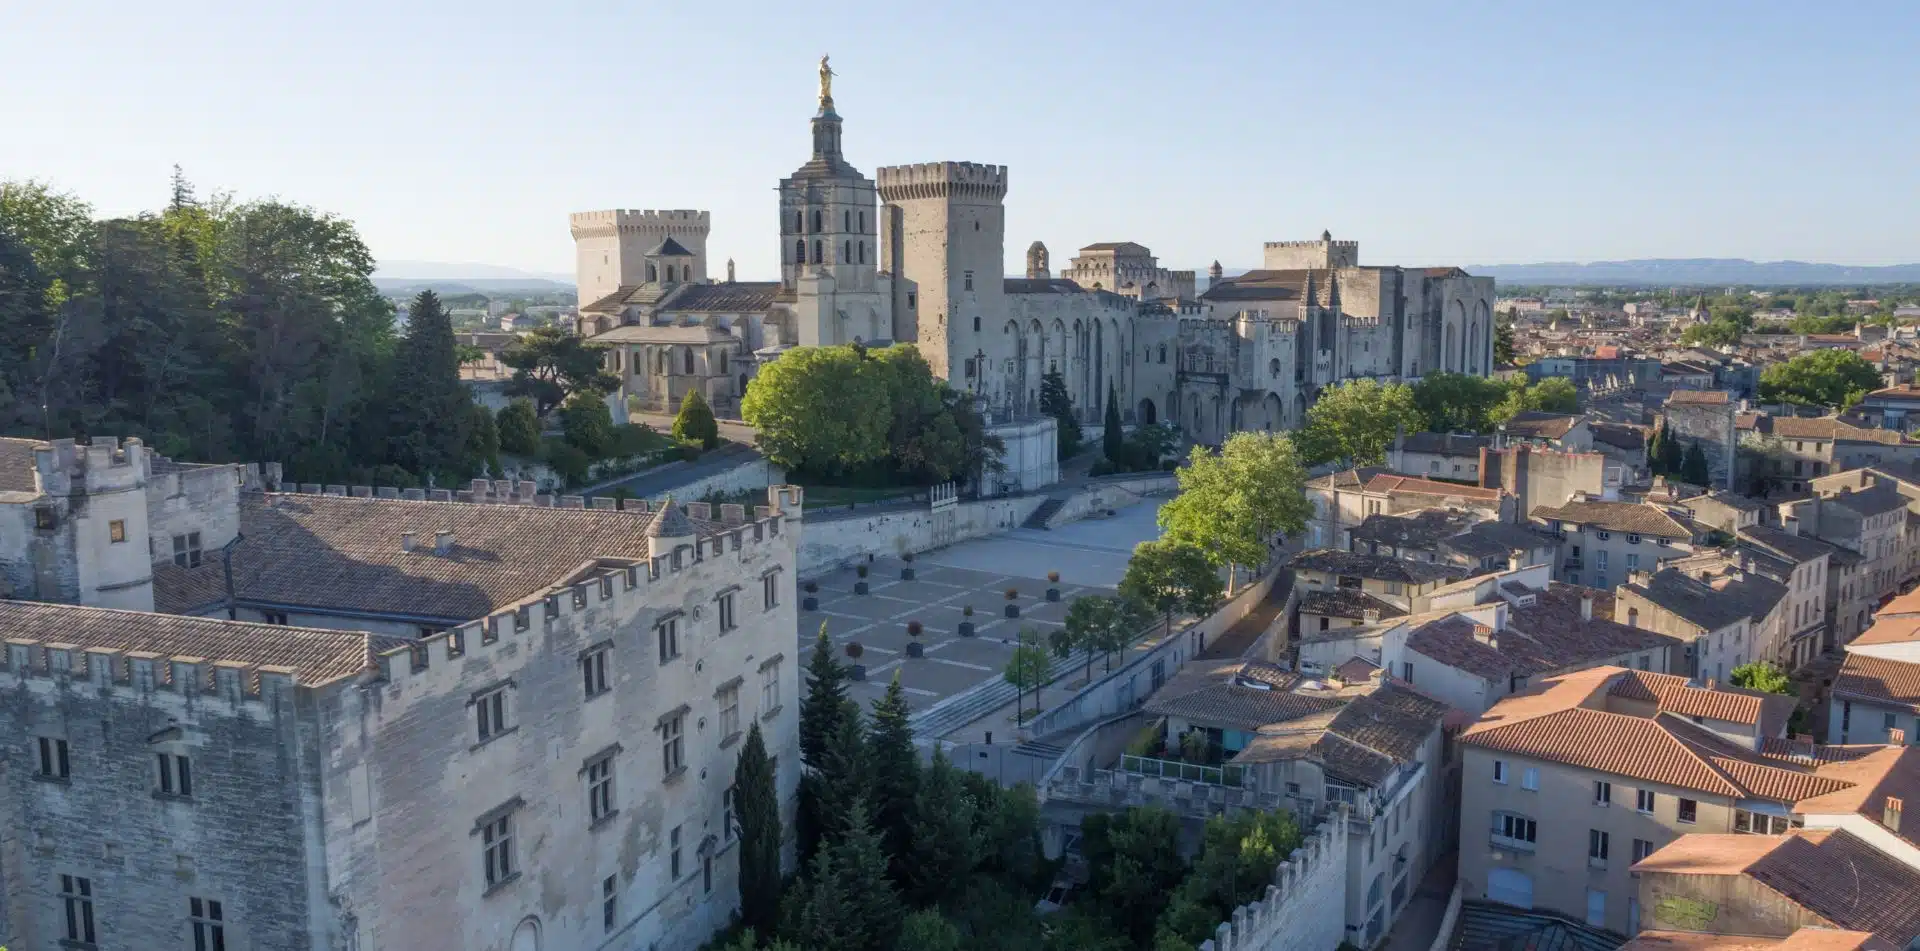 1 - Explore Avignon's 14th-century Papal Palace